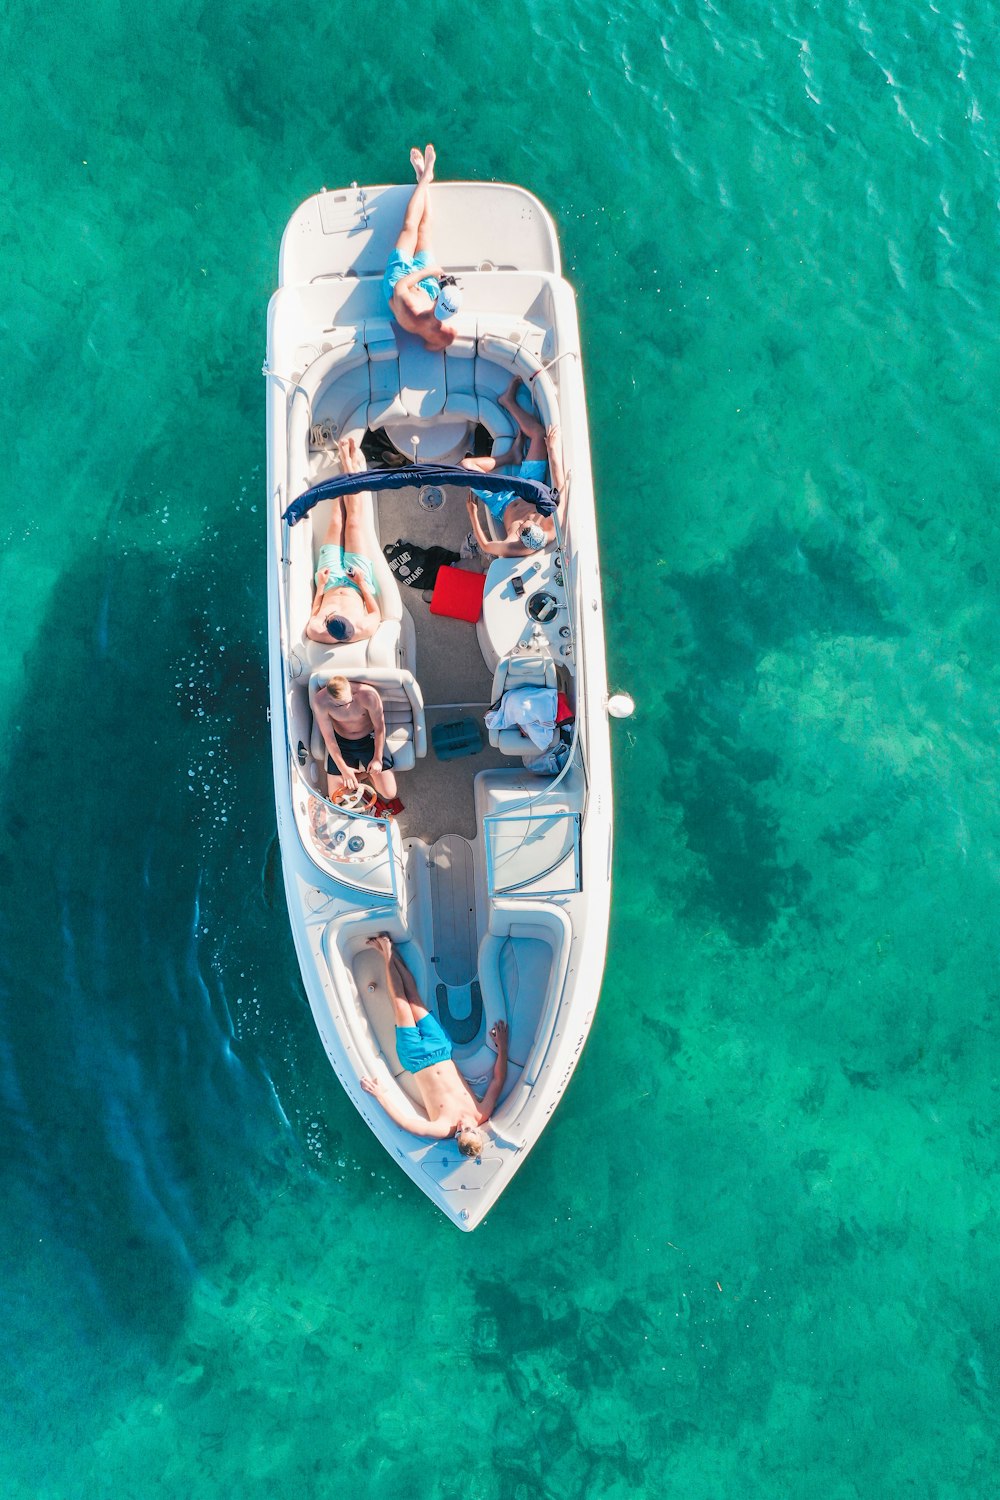 vue earial des gens sur un bateau blanc